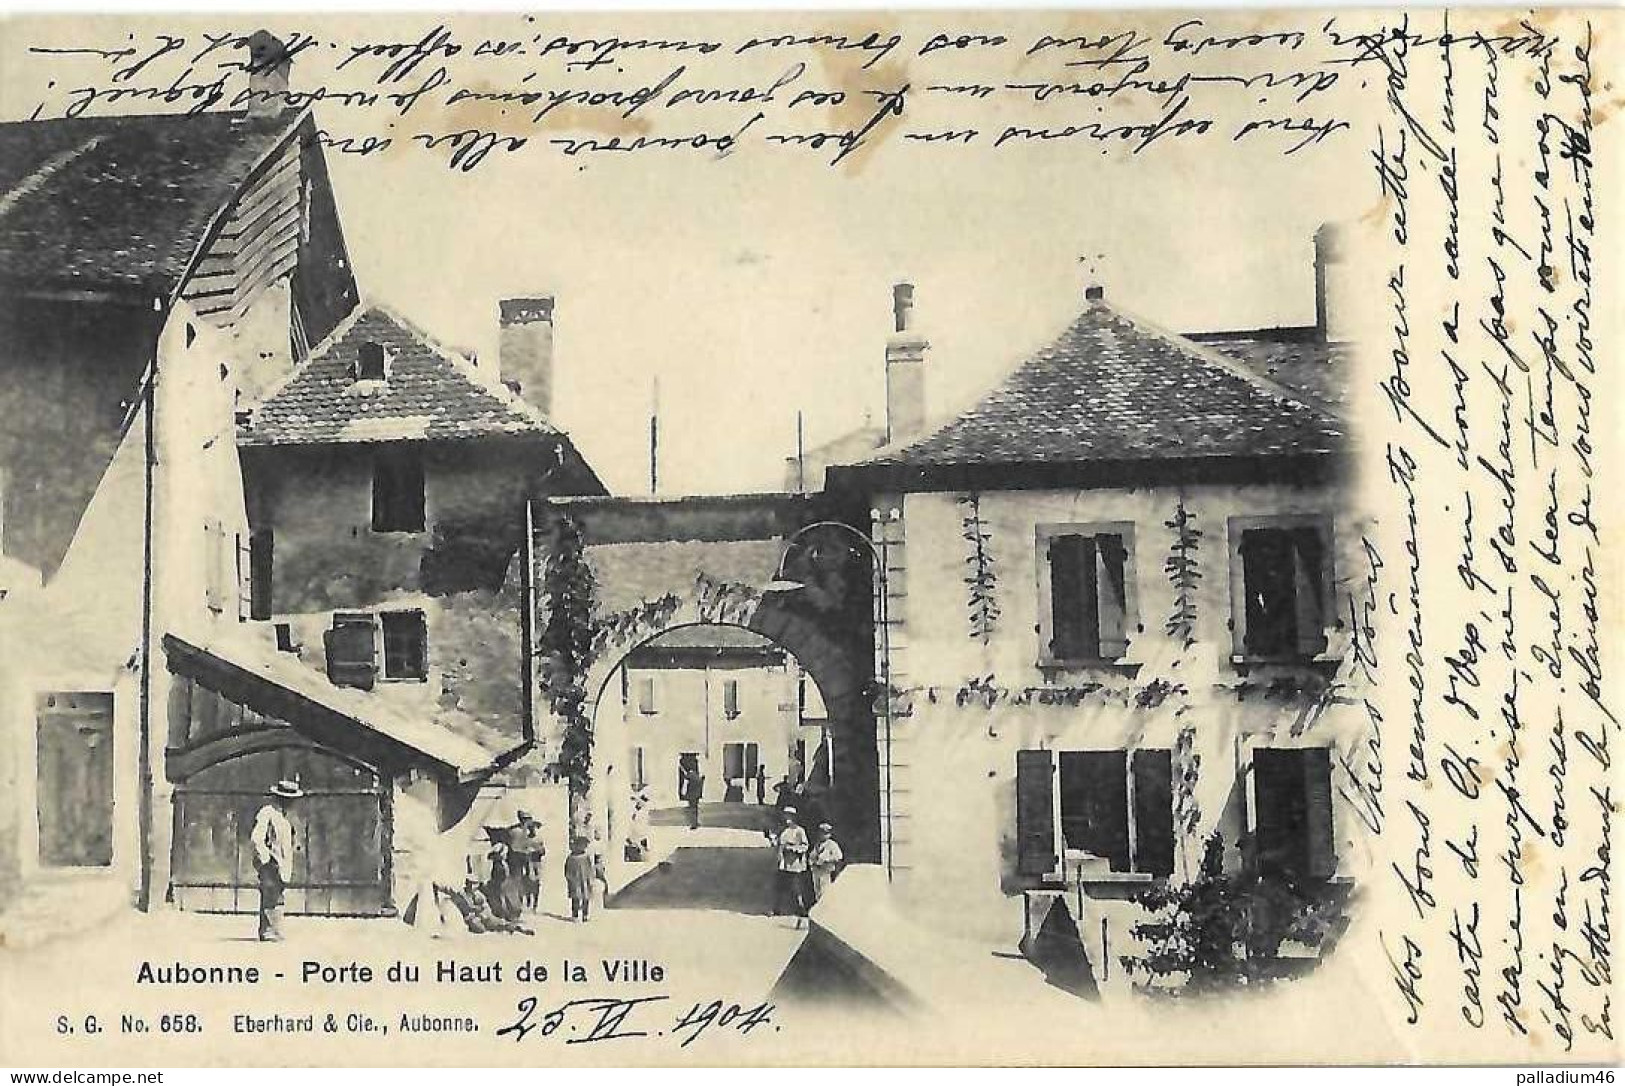 VD AUBONNE PORTE DU HAUT DE LA VILLE - ** Cachet De La Commune ** - Circulé Le 25.06.1904 - Eberhard No 658 - Aubonne